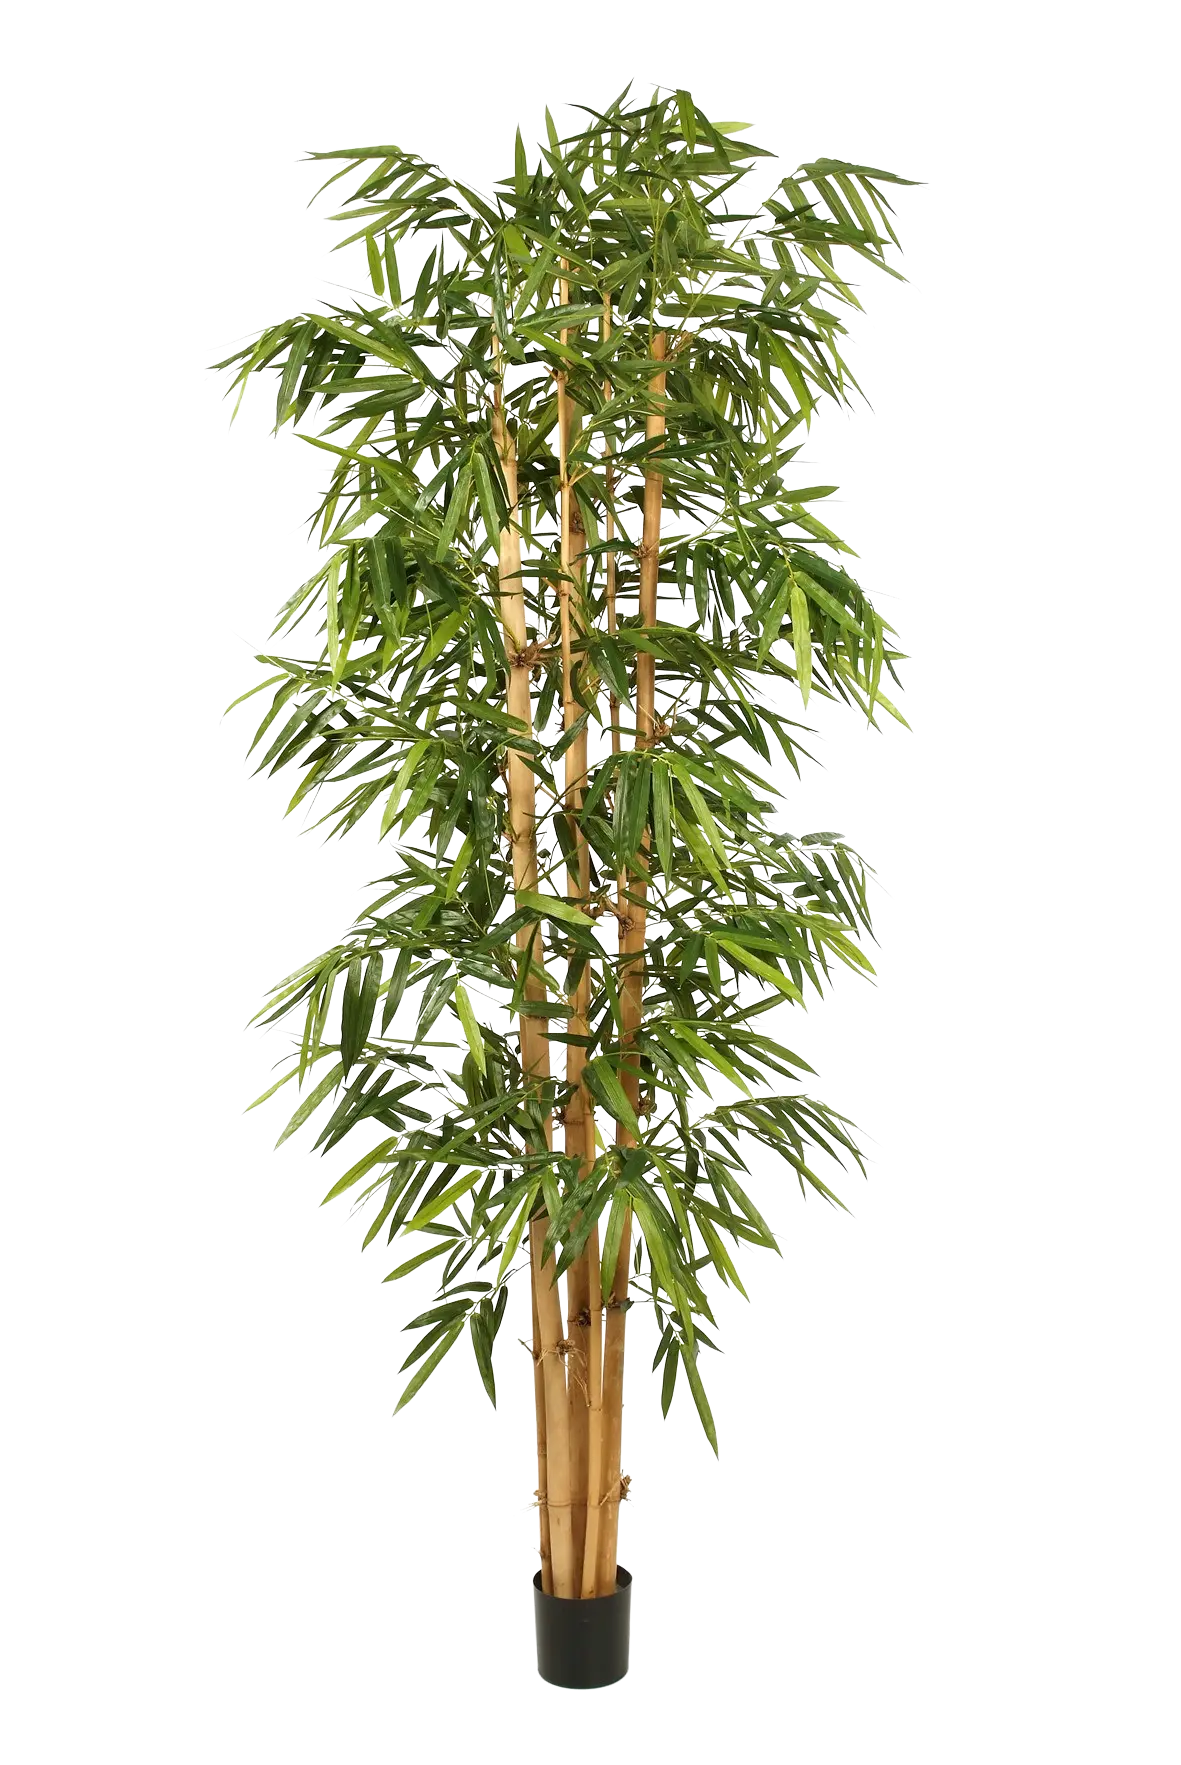 Künstlicher Bambus - Marlon auf transparentem Hintergrund mit echt wirkenden Kunstblättern. Diese Kunstpflanze gehört zur Gattung/Familie der "Bambuse" bzw. "Kunst-Bambuse".